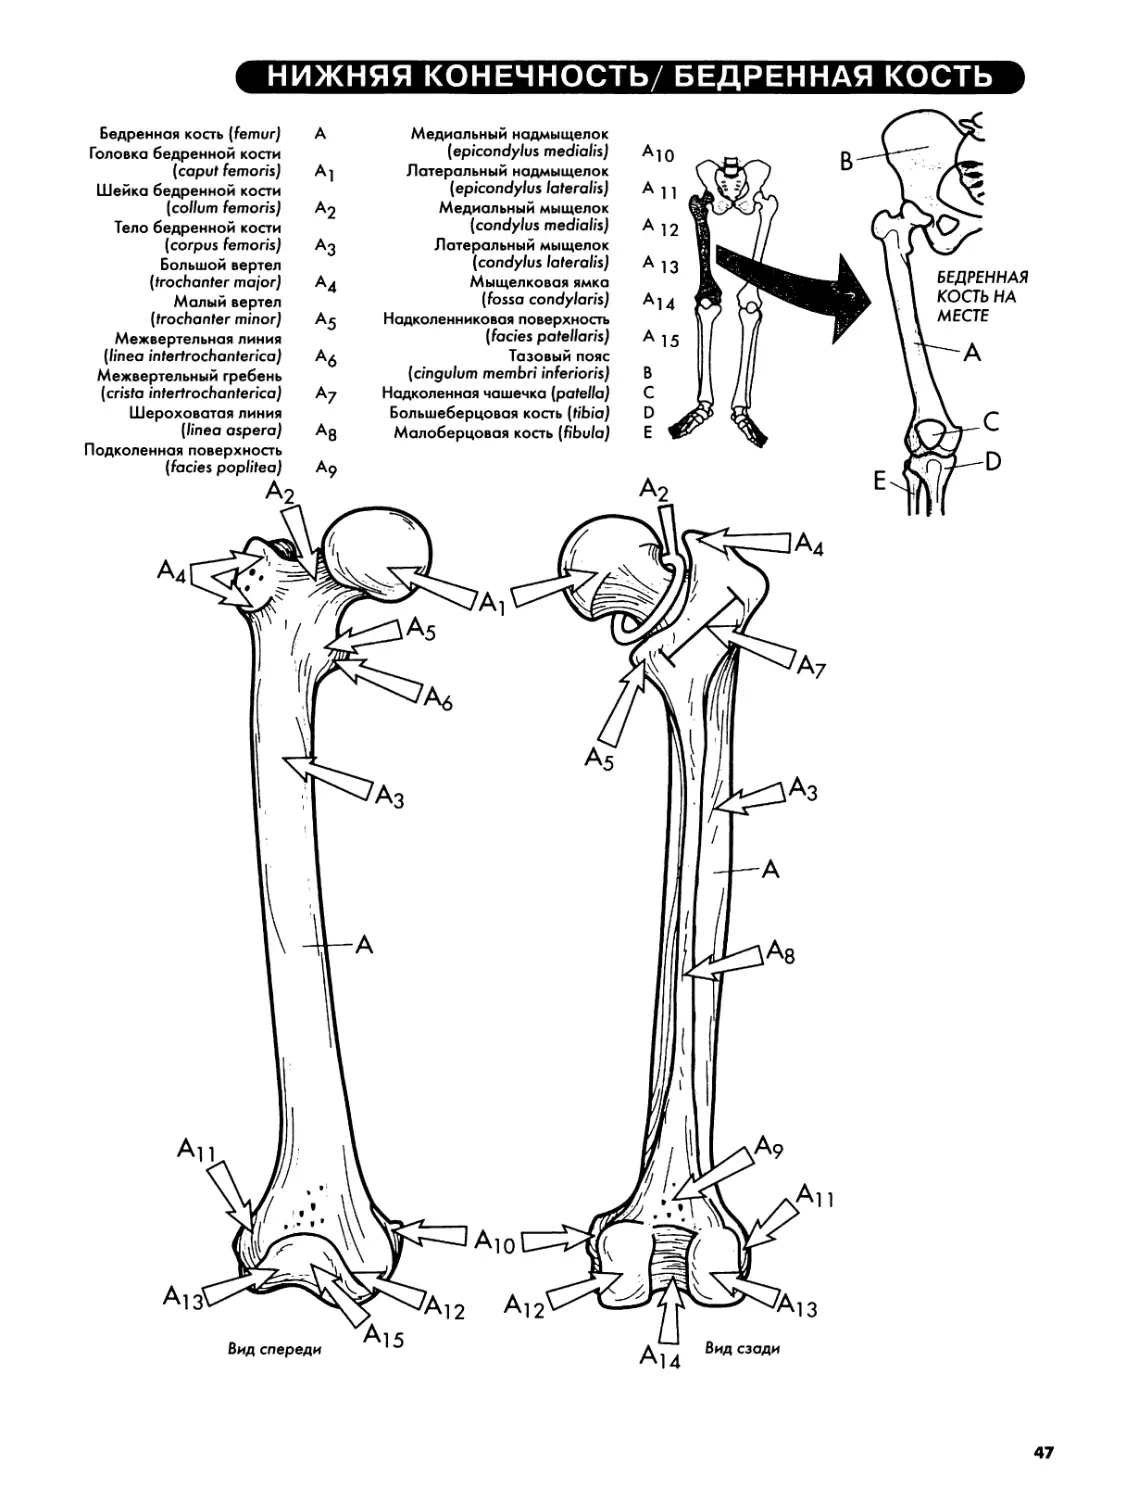 Верхняя конечность — Лучевая и локтевая кости